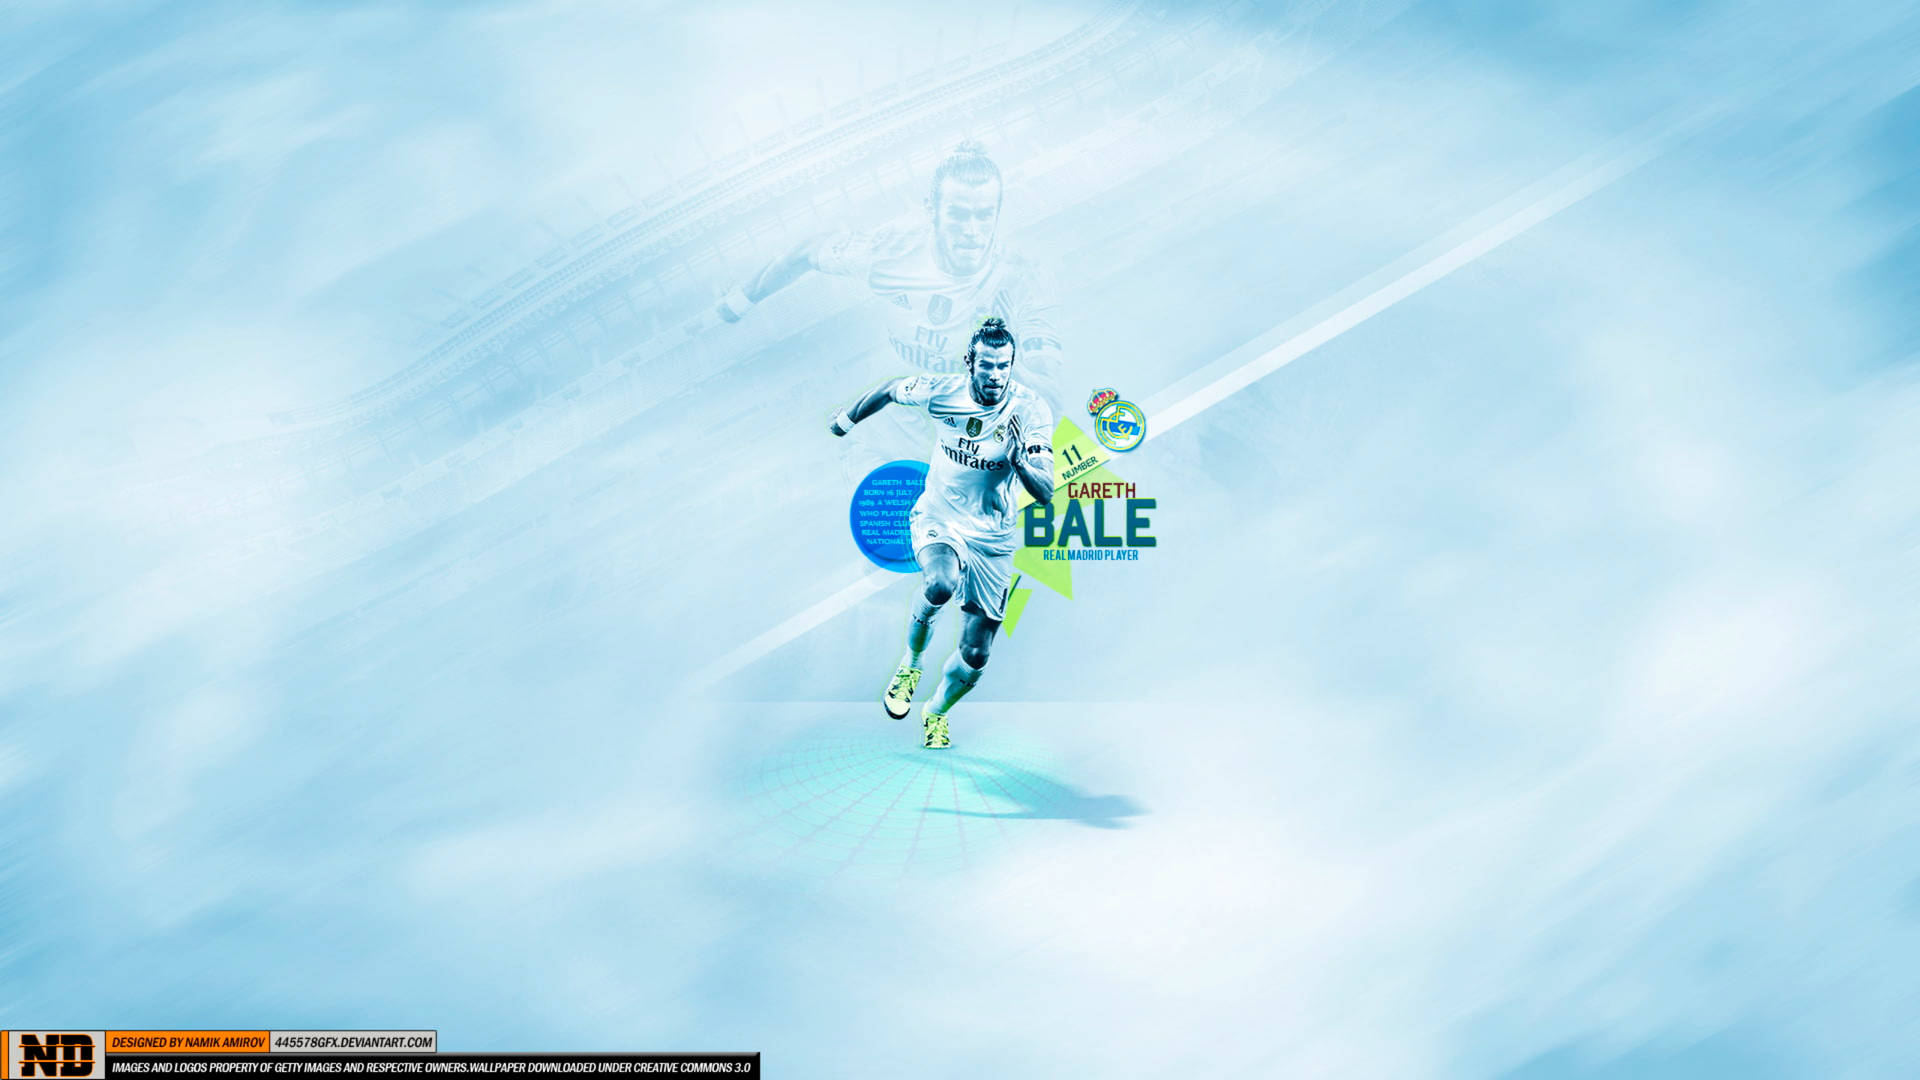 Gareth Bale In Digital Aesthetic Wallpaper